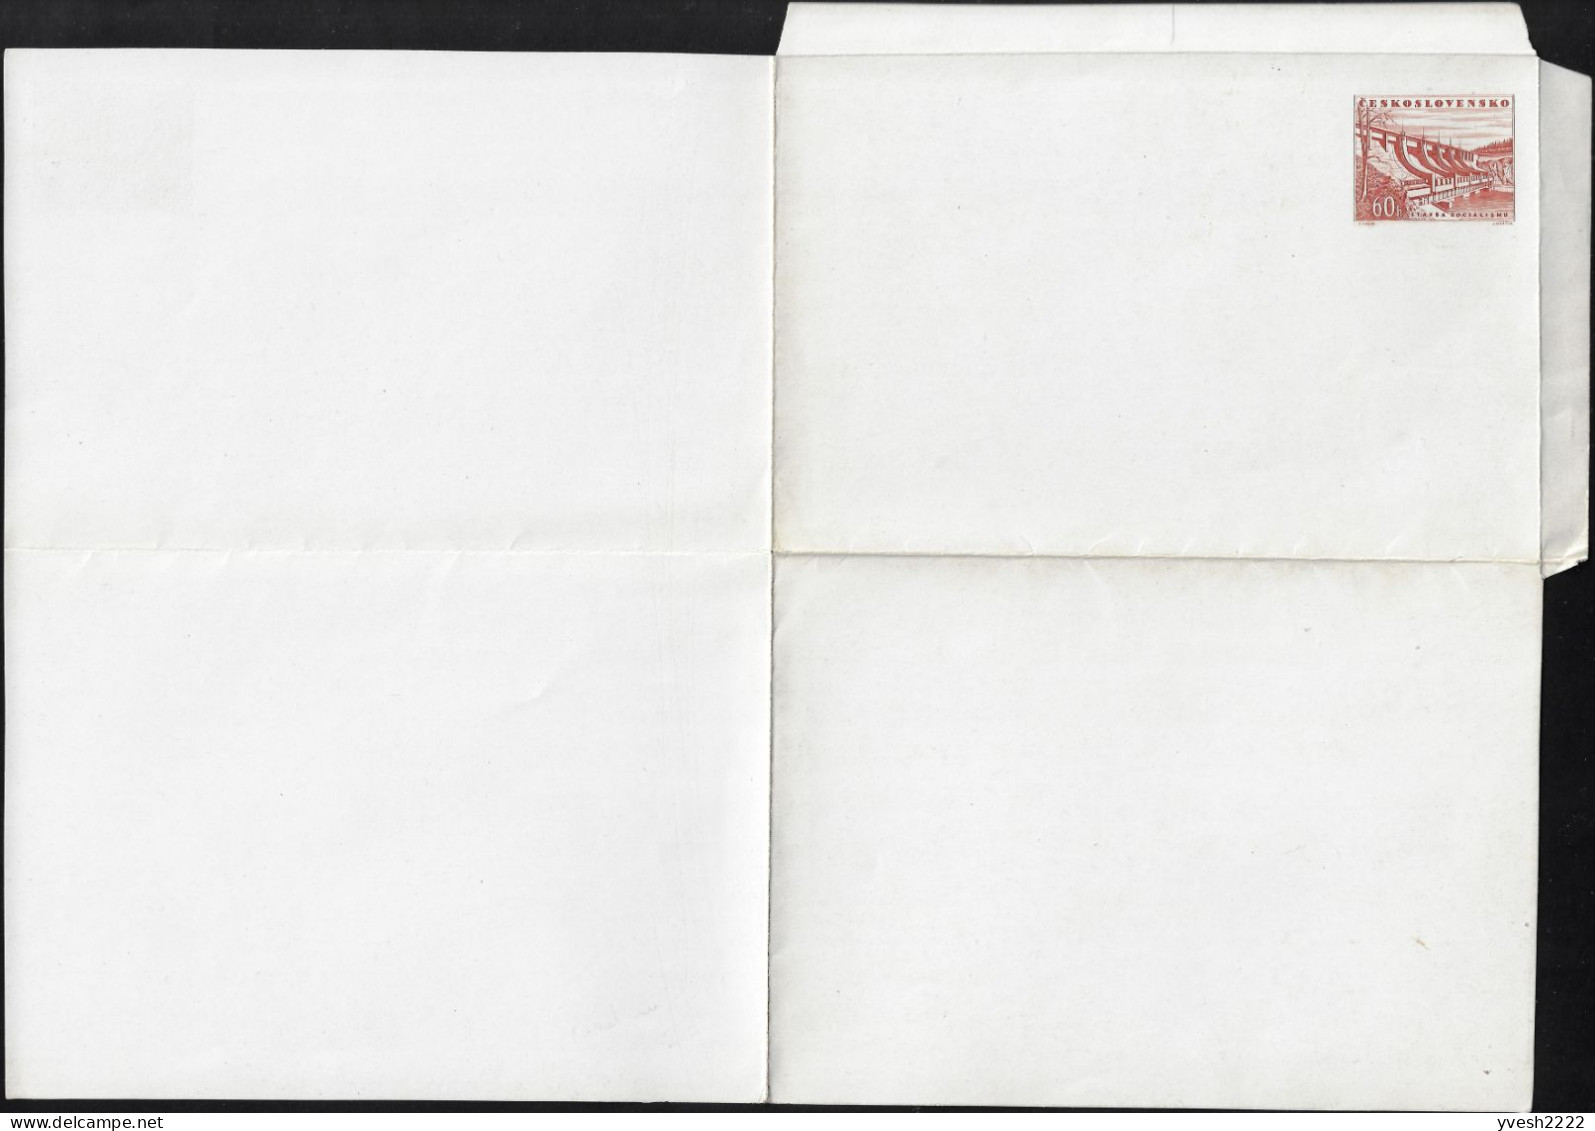 Tchécoslovaquie 1953 Michel F1b ??? Carte-lettre Sans La Moindre Inscription, Papier Craie. Barrage Communiste - Agua